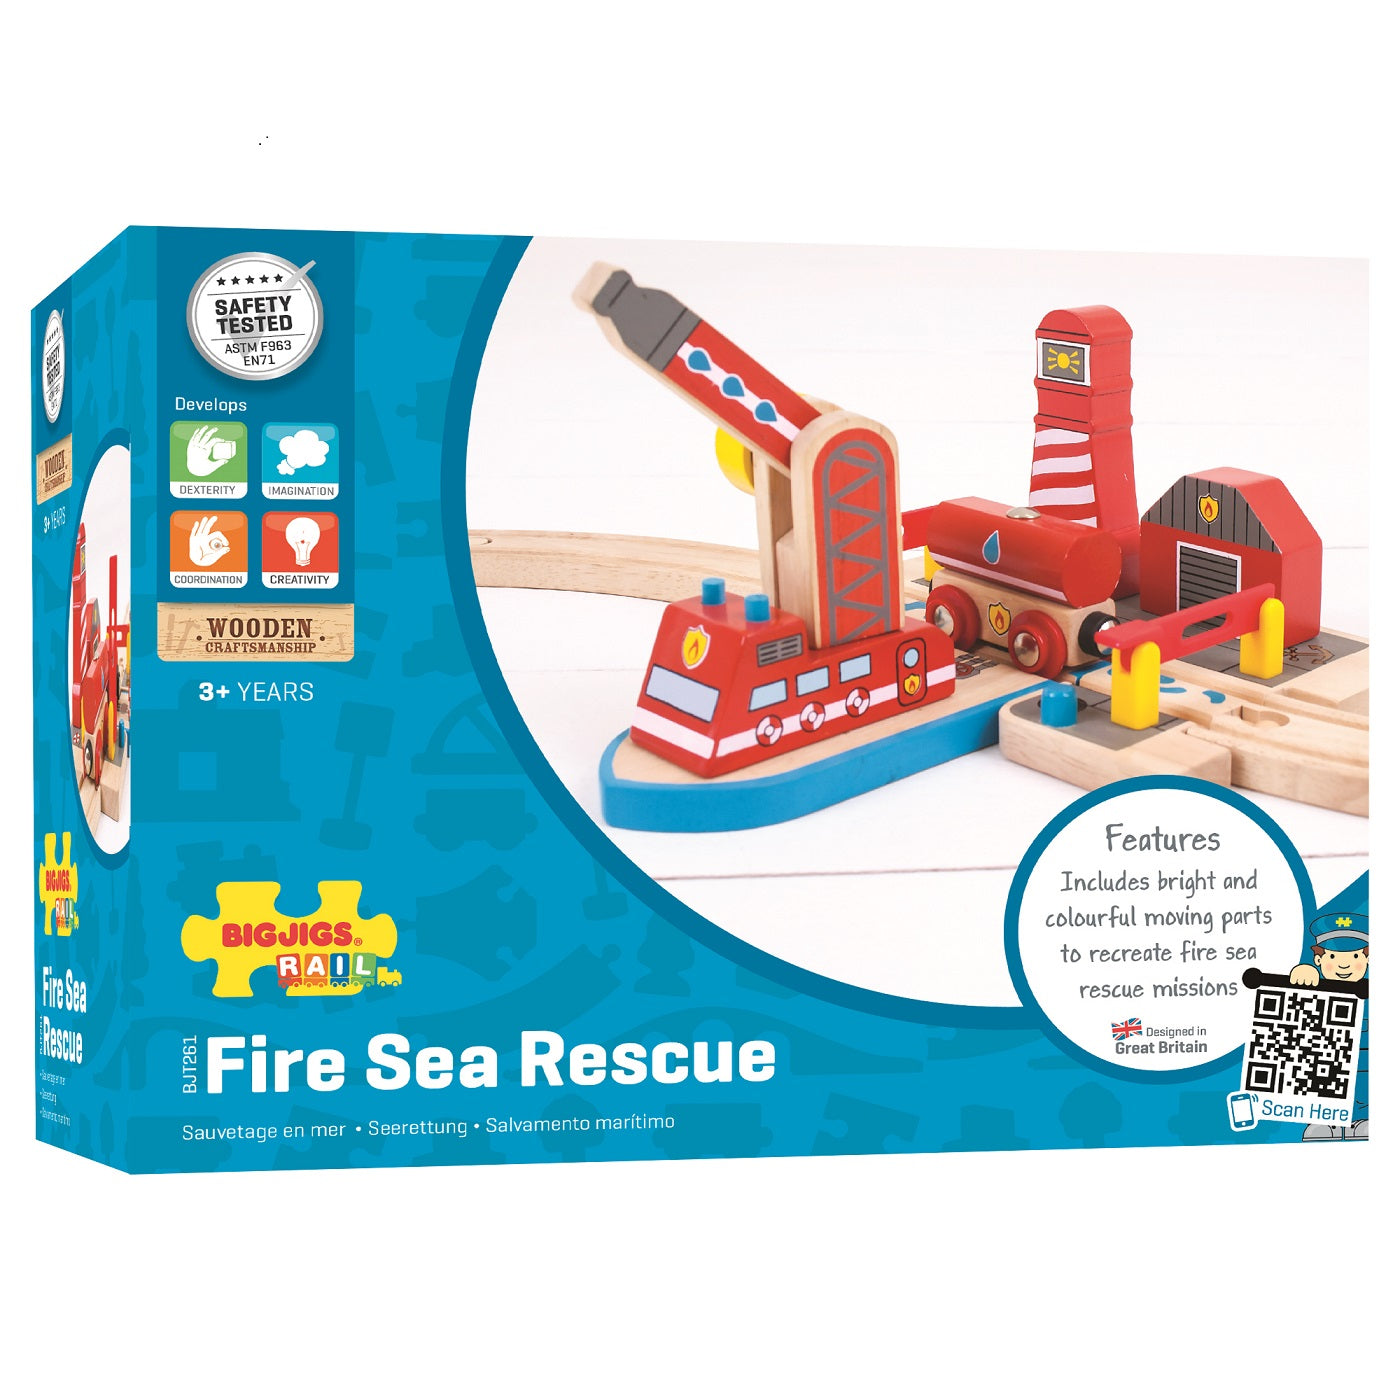 Fire Sea Rescue